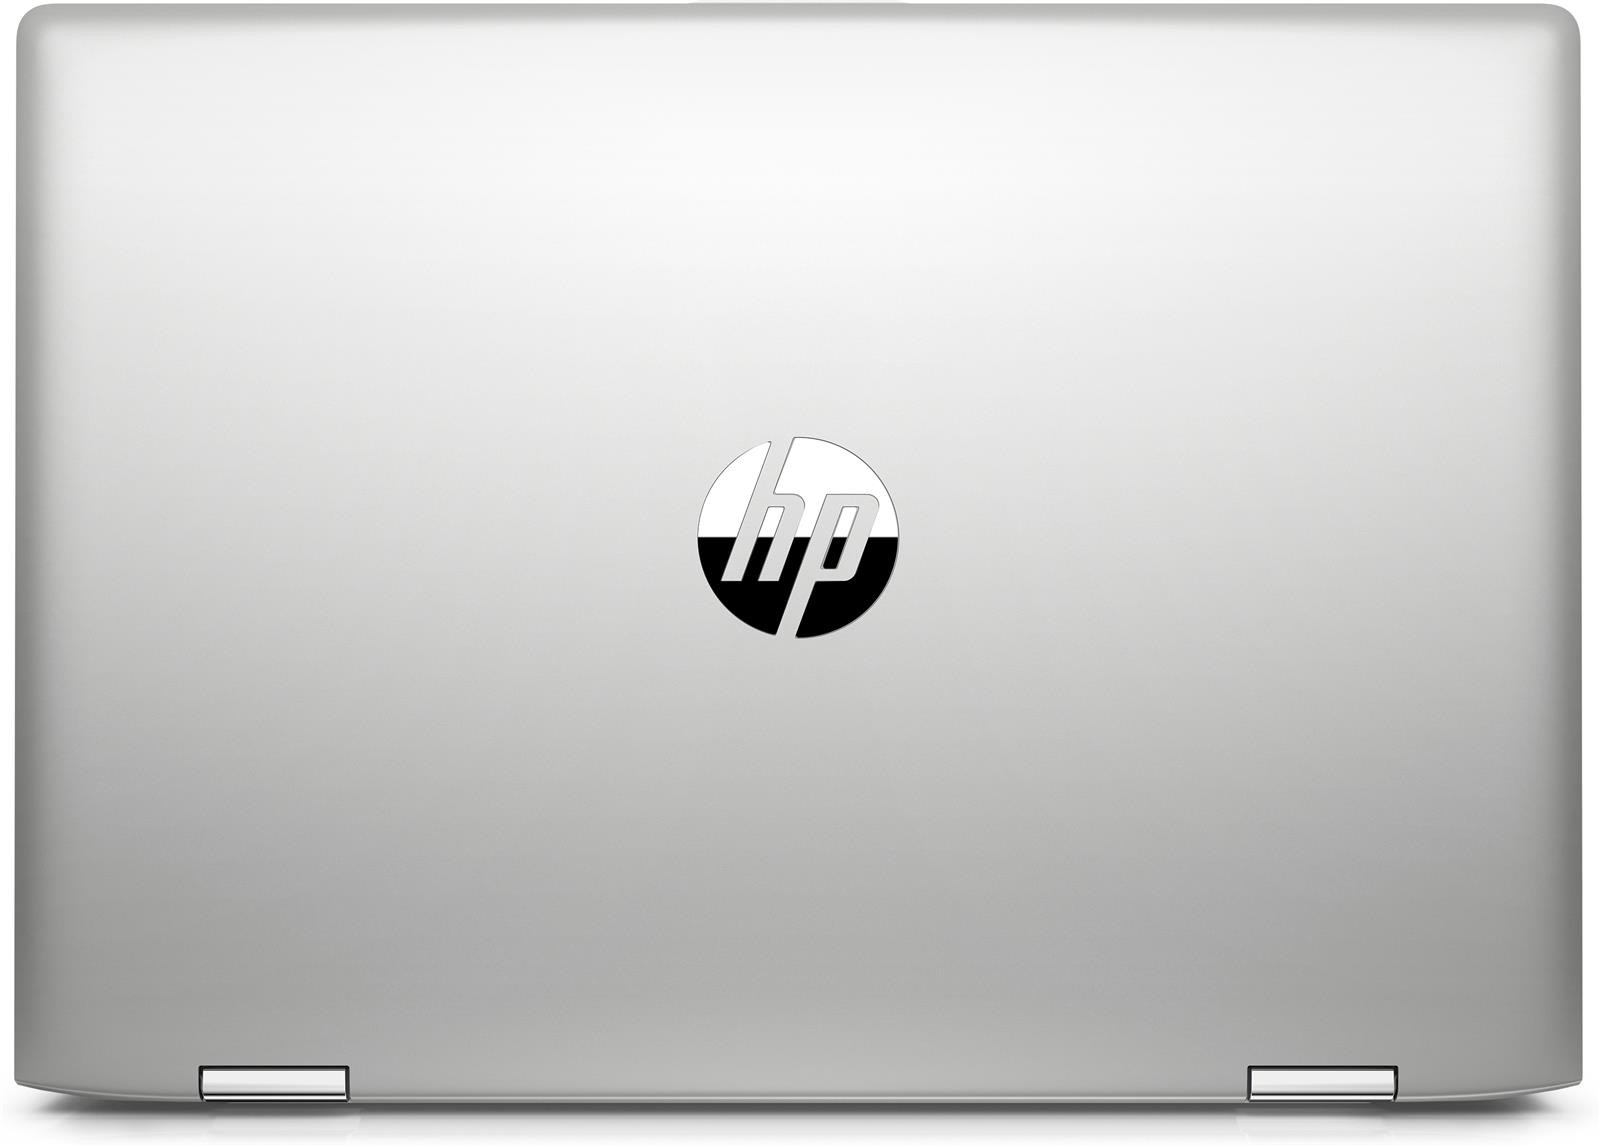 HP ProBook x360 440 G1 | 14" | FHD | i3-8130U | 8GB | 256GB SSD | Win 10 Pro | DK